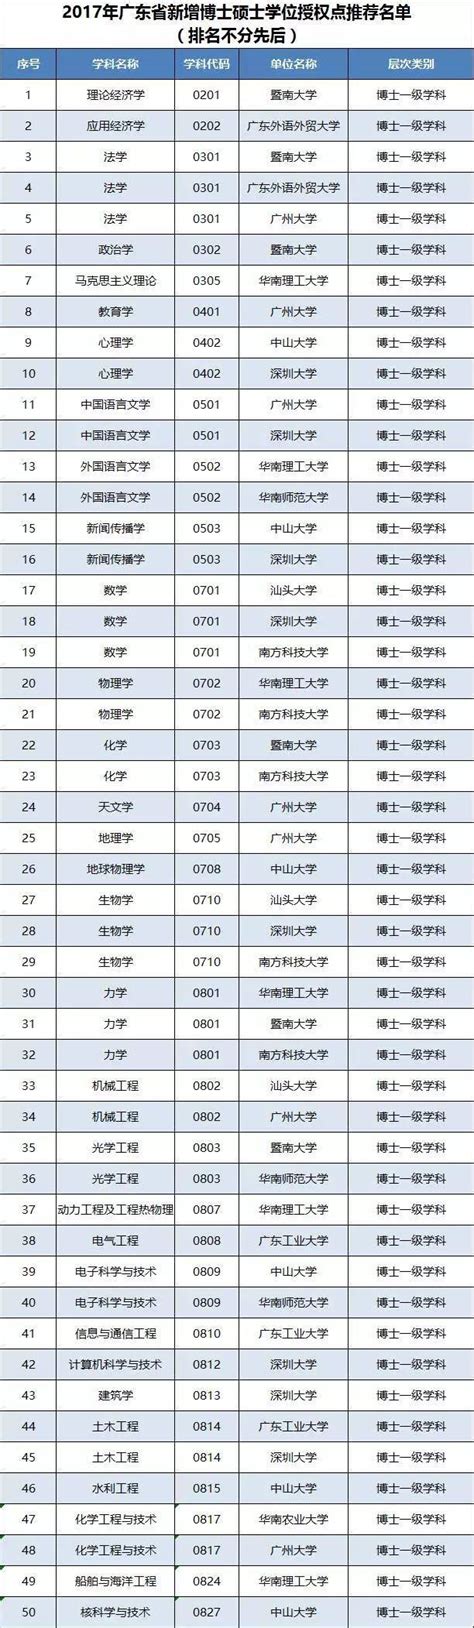 2017年广东博士硕士学位授权审核推荐名单公示，广师获2个新增硕士点推荐